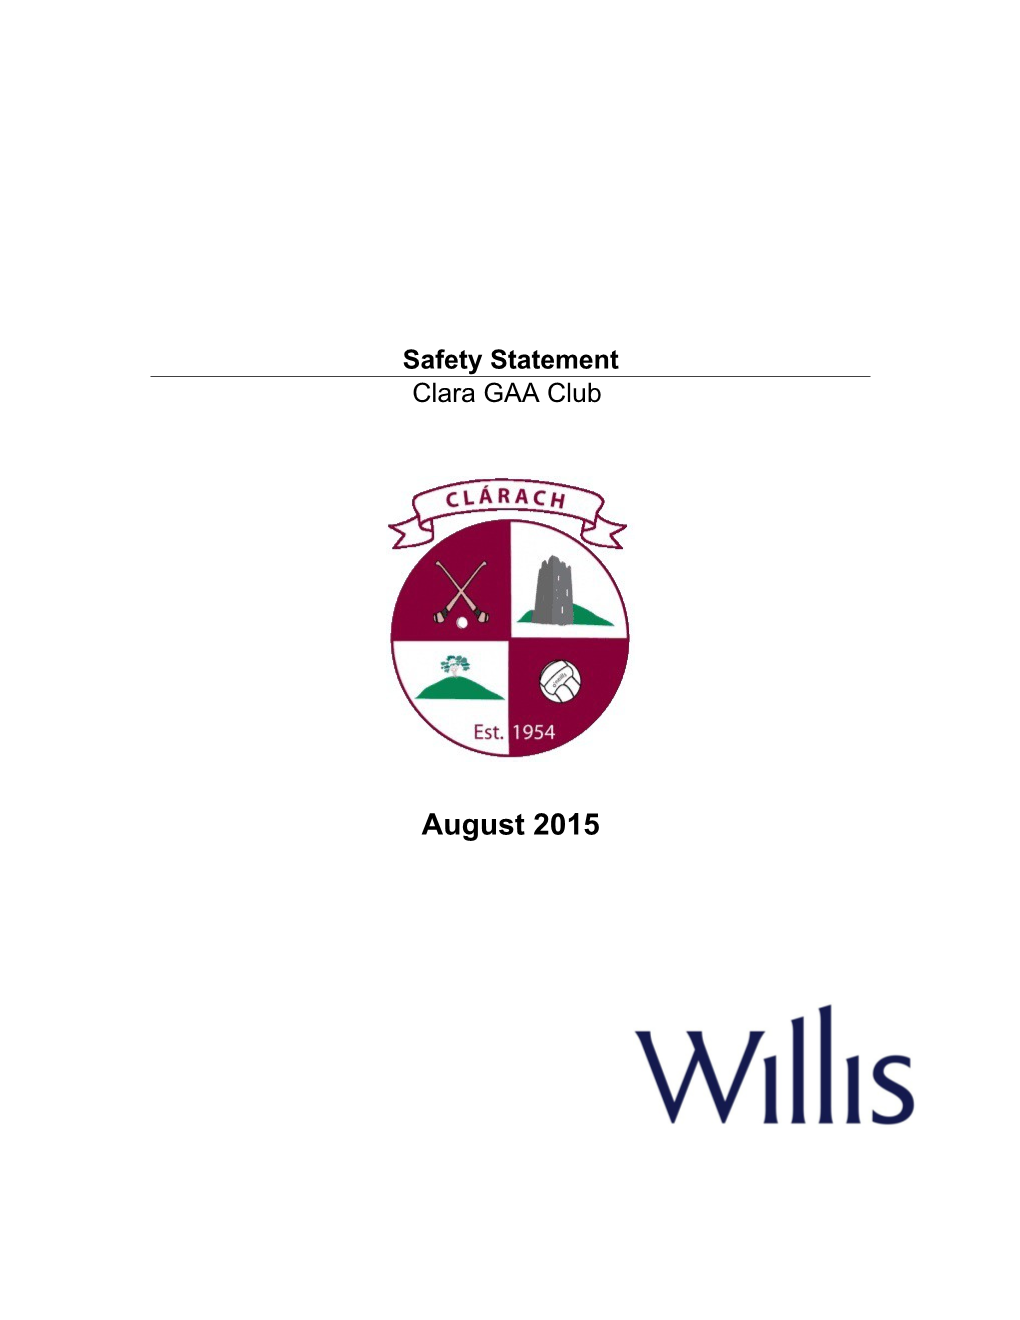 Clara GAA Safety Statement 2015